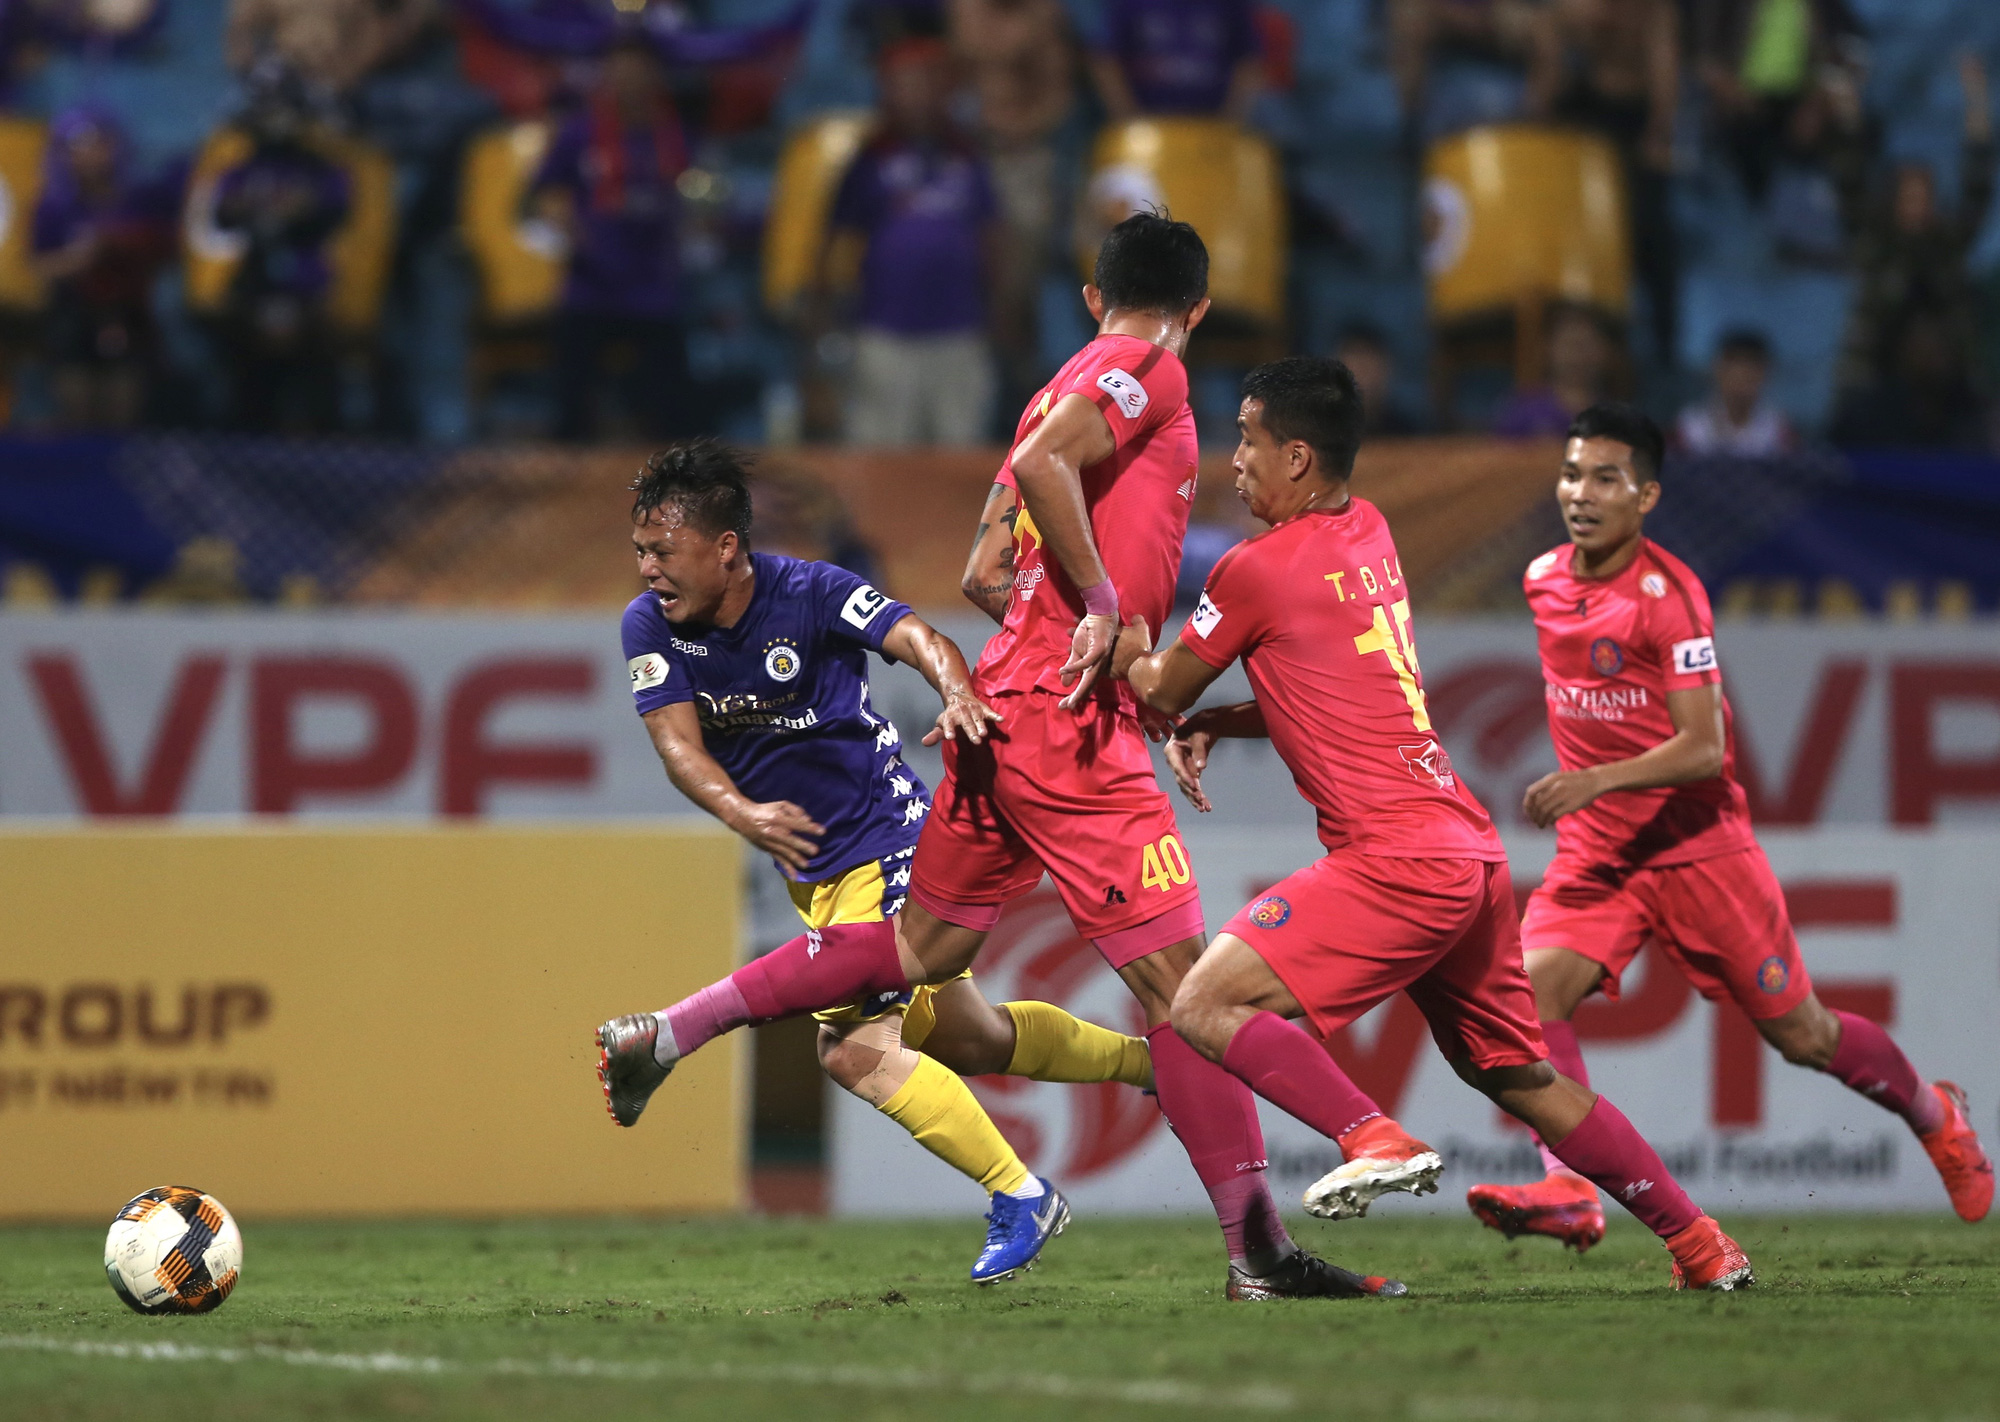 CLB Hà Nội và CLB Sài Gòn sẽ không thể tham dự AFC Cup 2021 do dịch bệnh